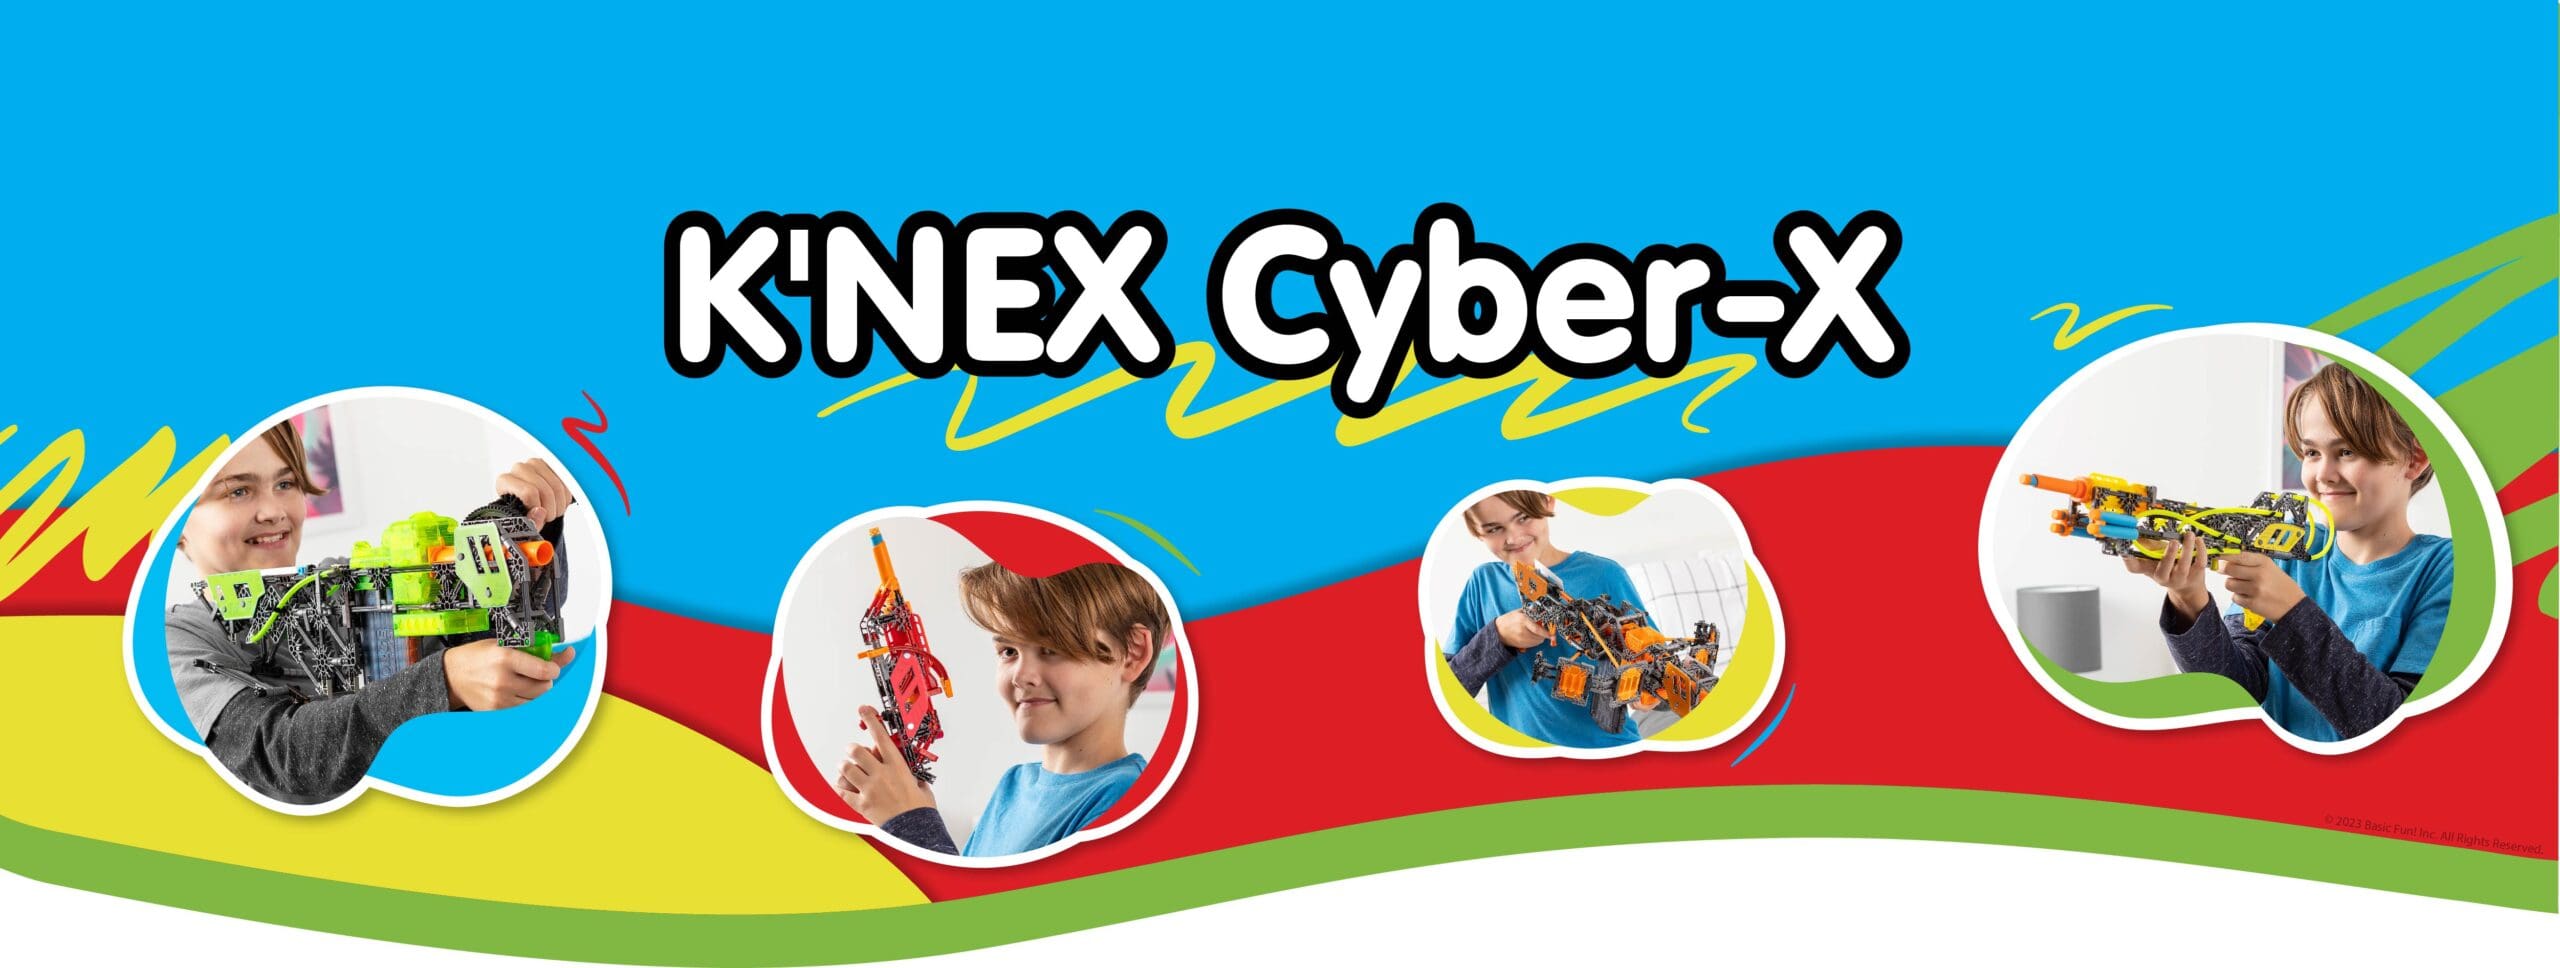 K'NEX Cyber-X Banner